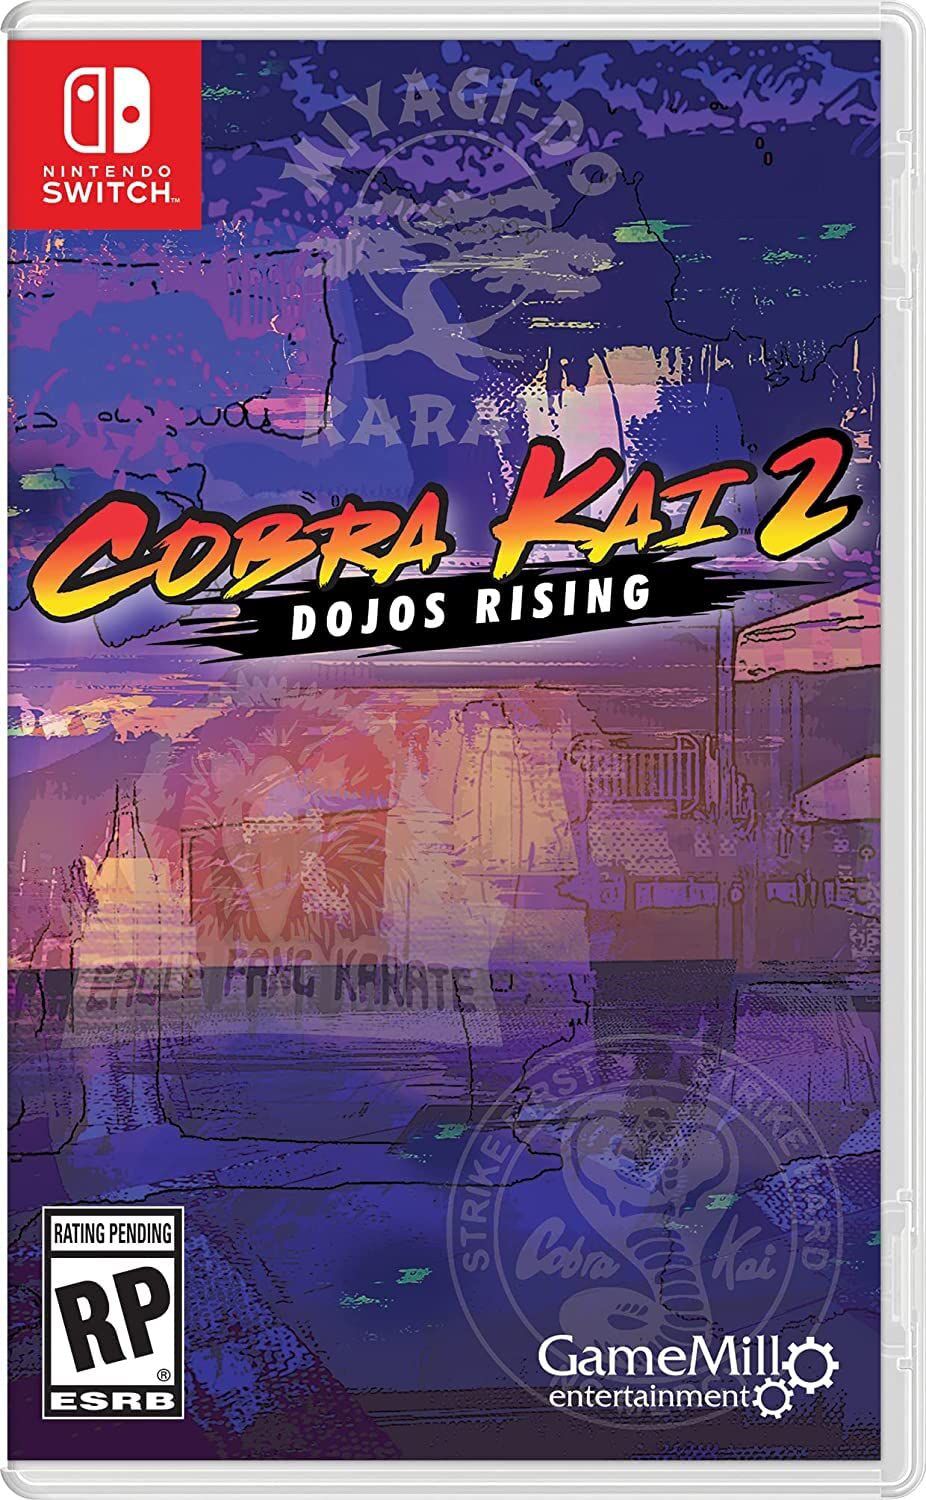 Comprar o Cobra Kai 2: Dojos Rising